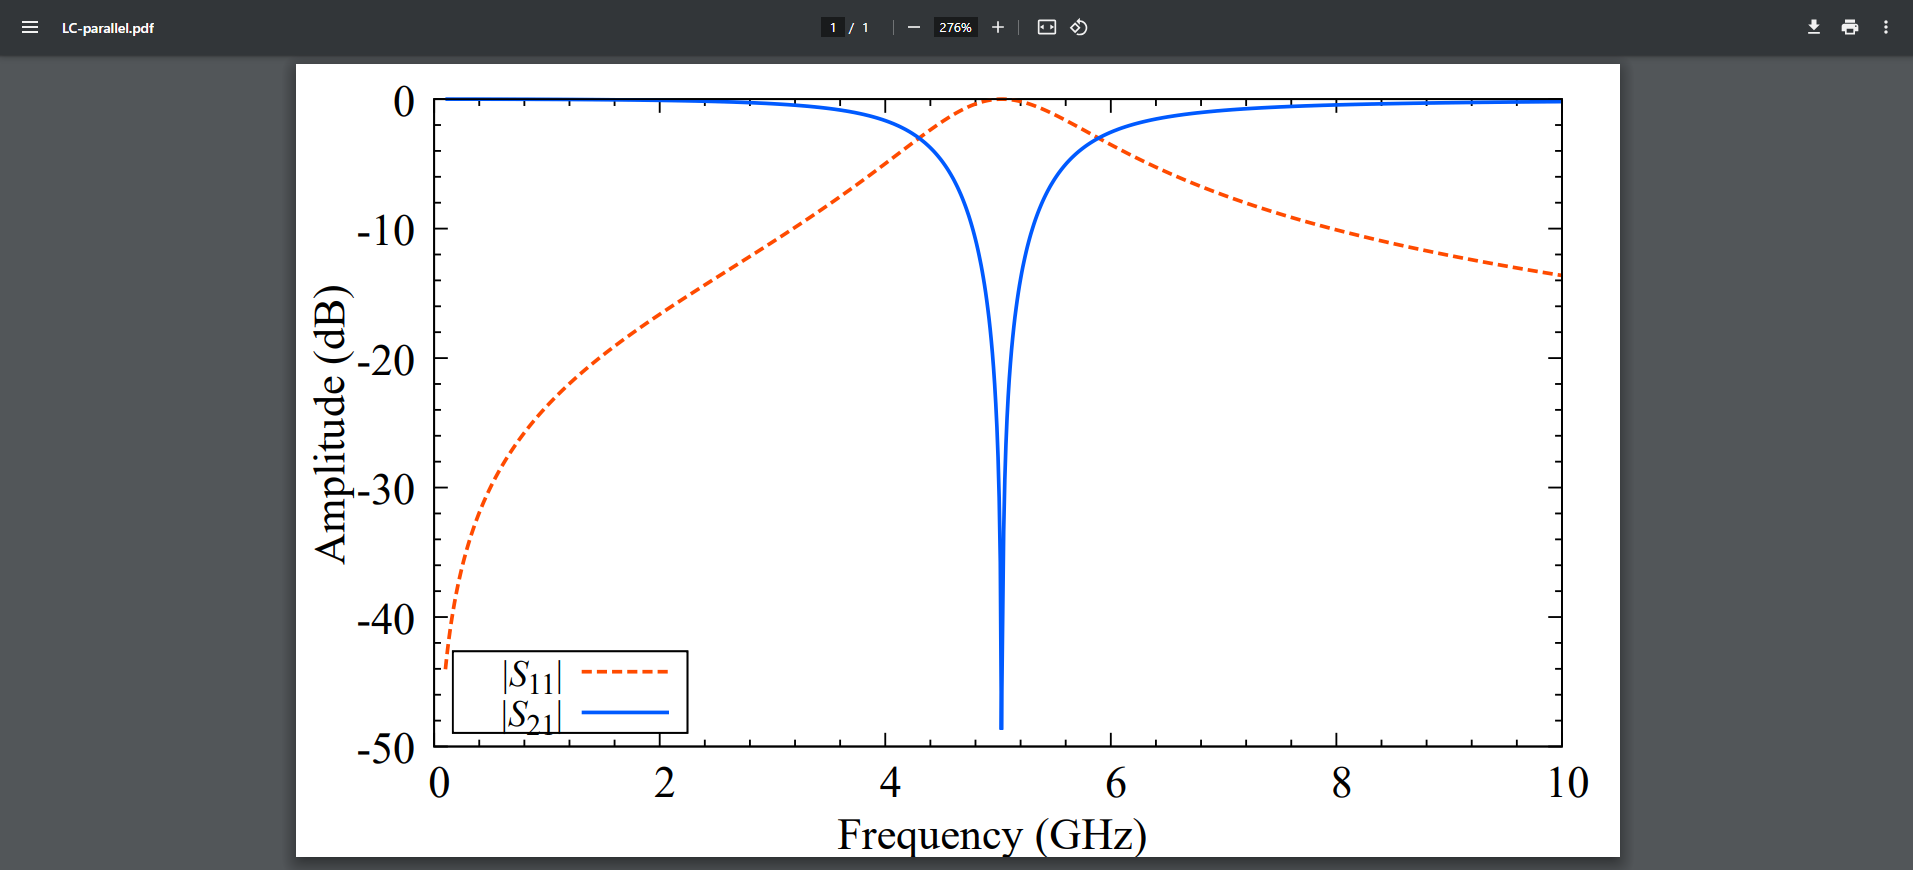 生成したLC並列回路の周波数応答のグラフ